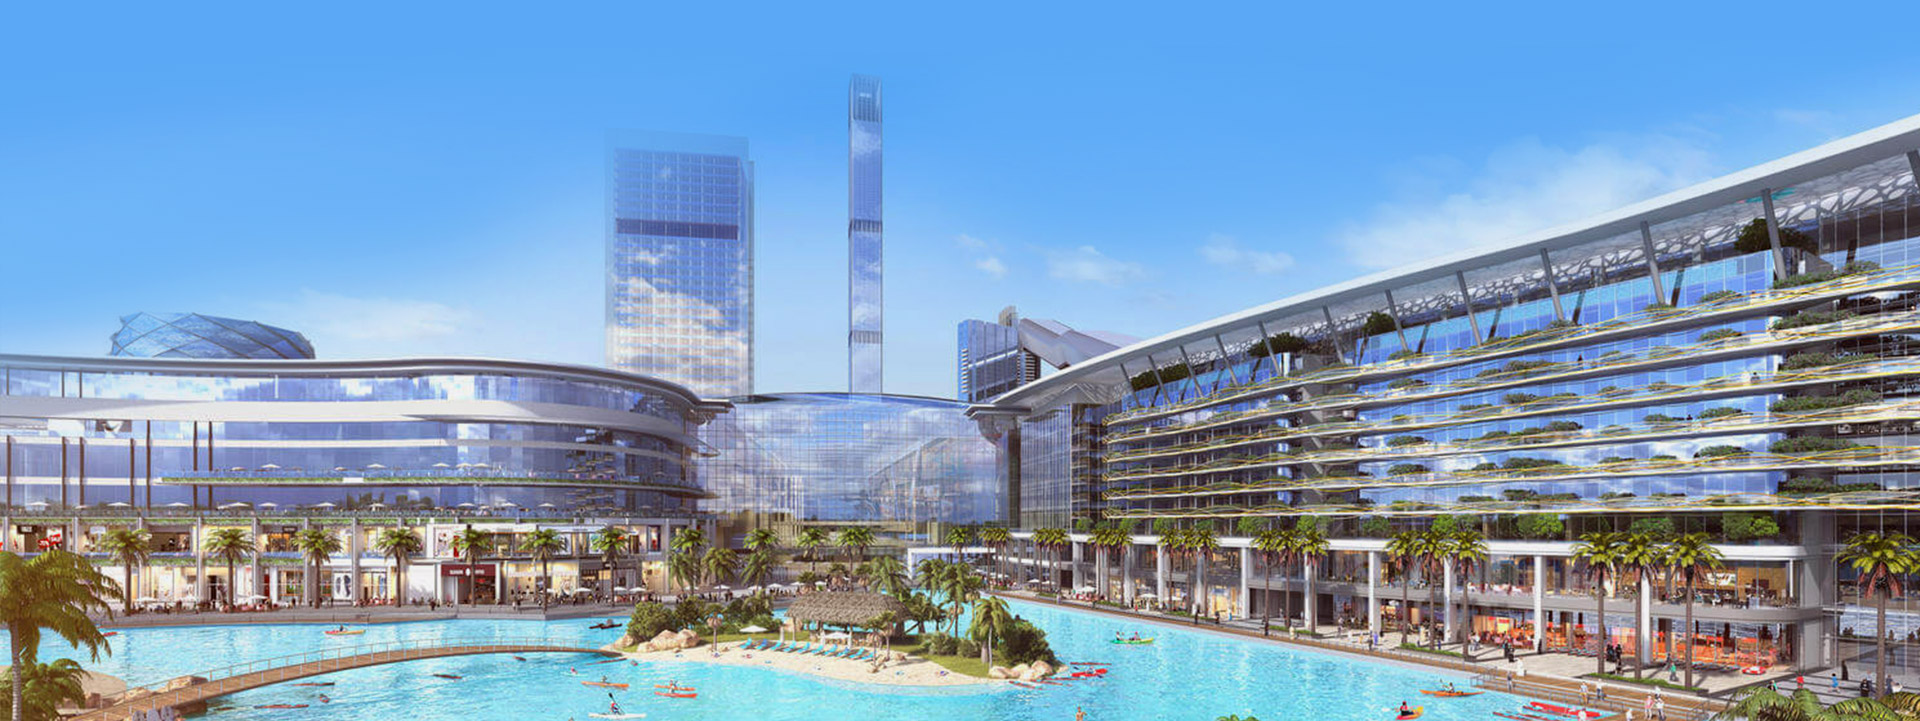 The Meydan One Mall, MBR City, Dubai